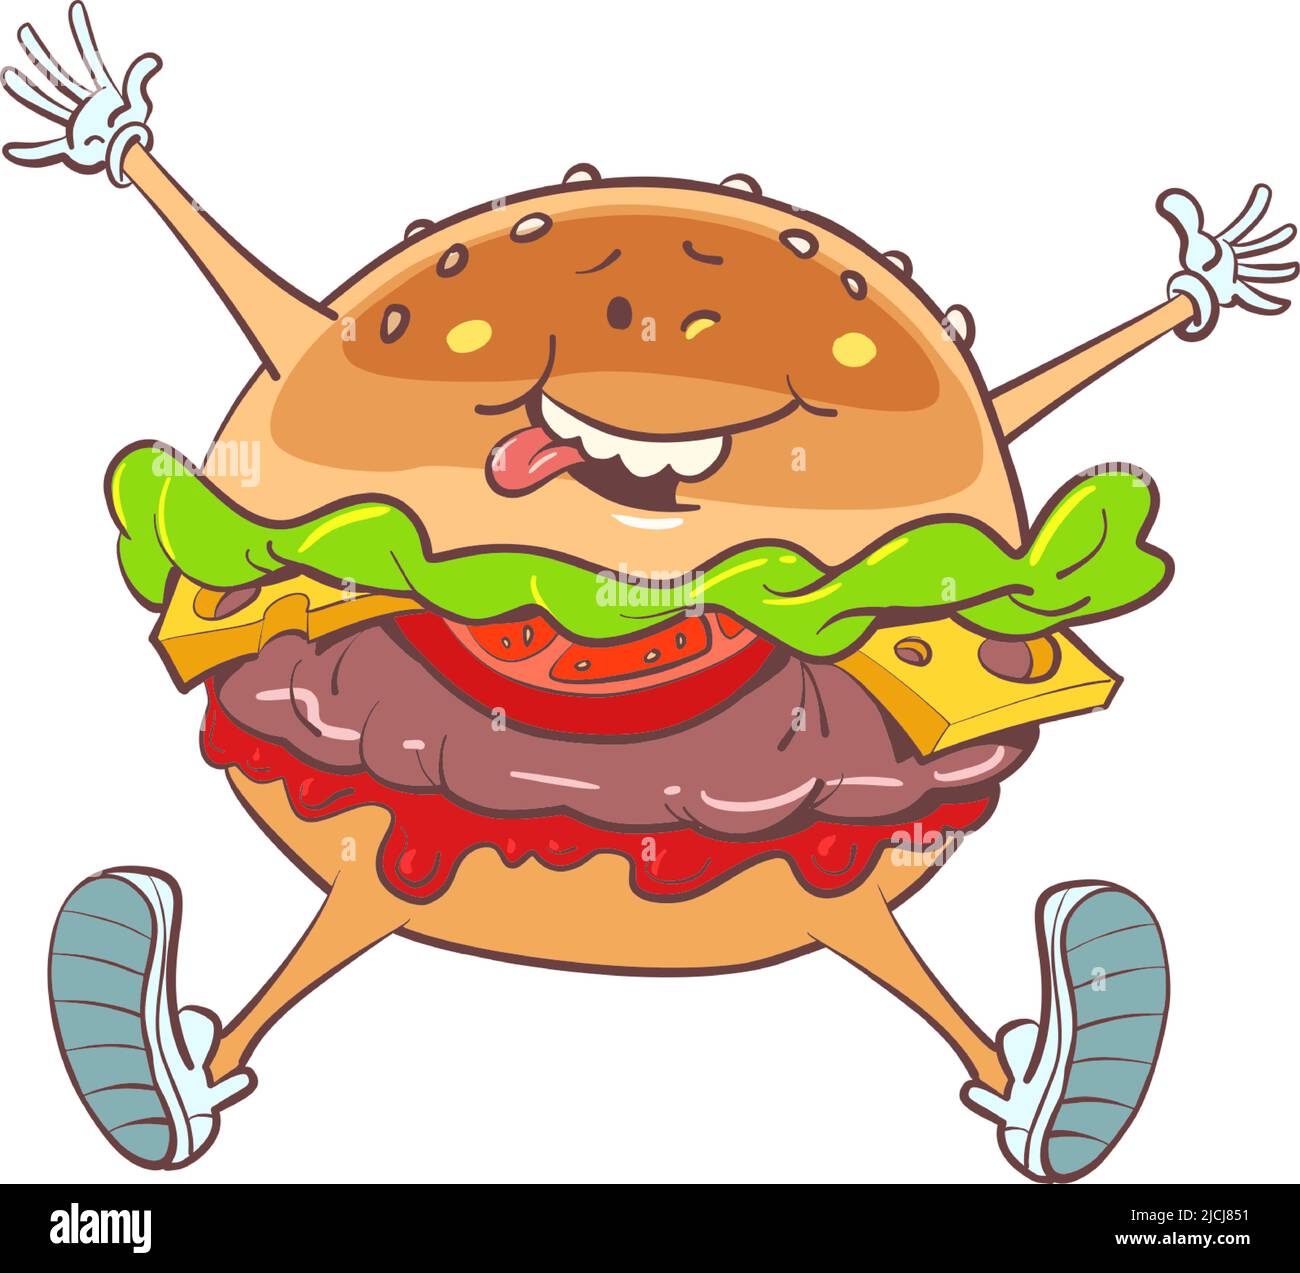 Alegre hamburguesa alegre, carácter de comida rápida. Restaurante de la calle Ilustración del Vector